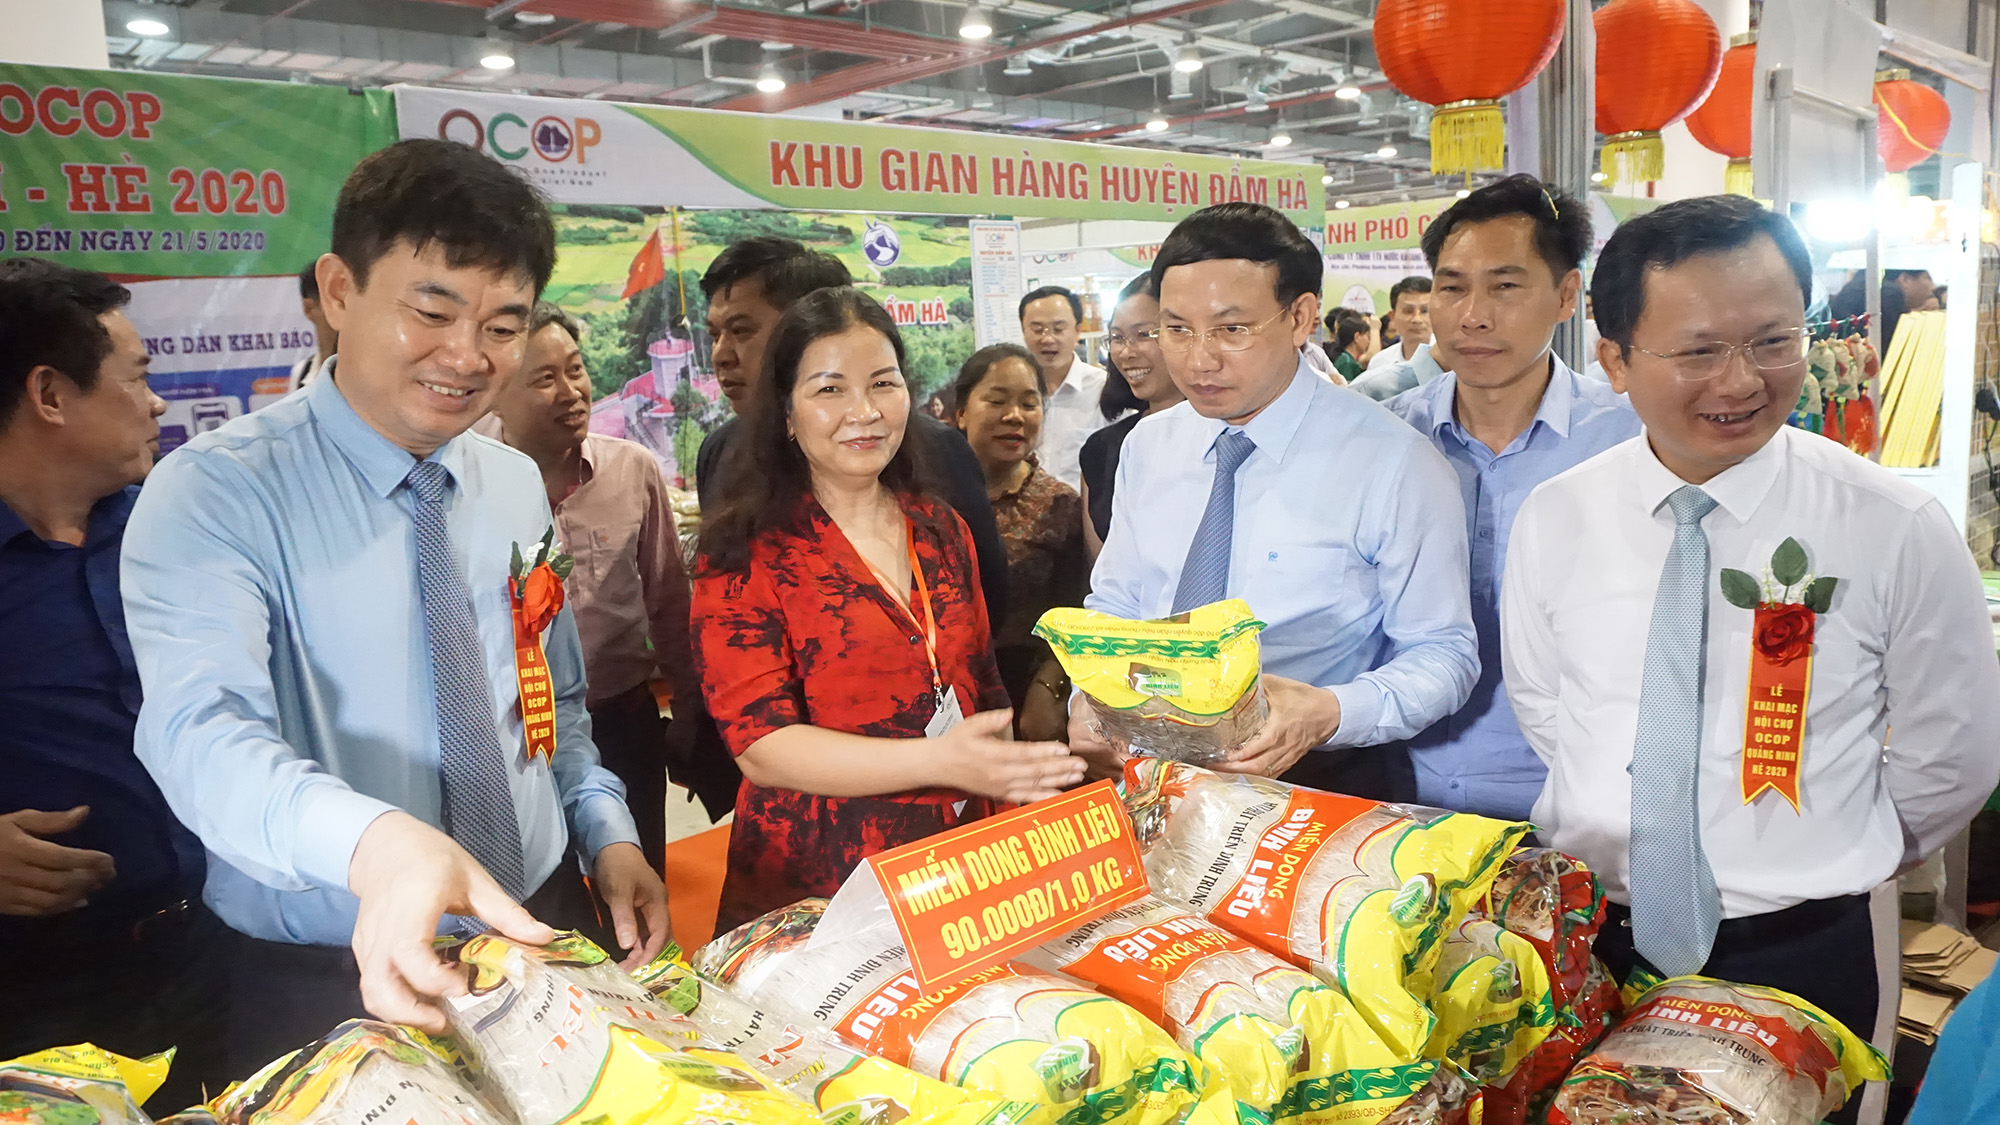 Phần lớn các sản phẩm OCOP tham dự Hội chợ OCOP Quảng Ninh - Hè 2020 là những sản phẩm có nguồn gốc xuất xứ rõ ràng. Ảnh: Minh Đức